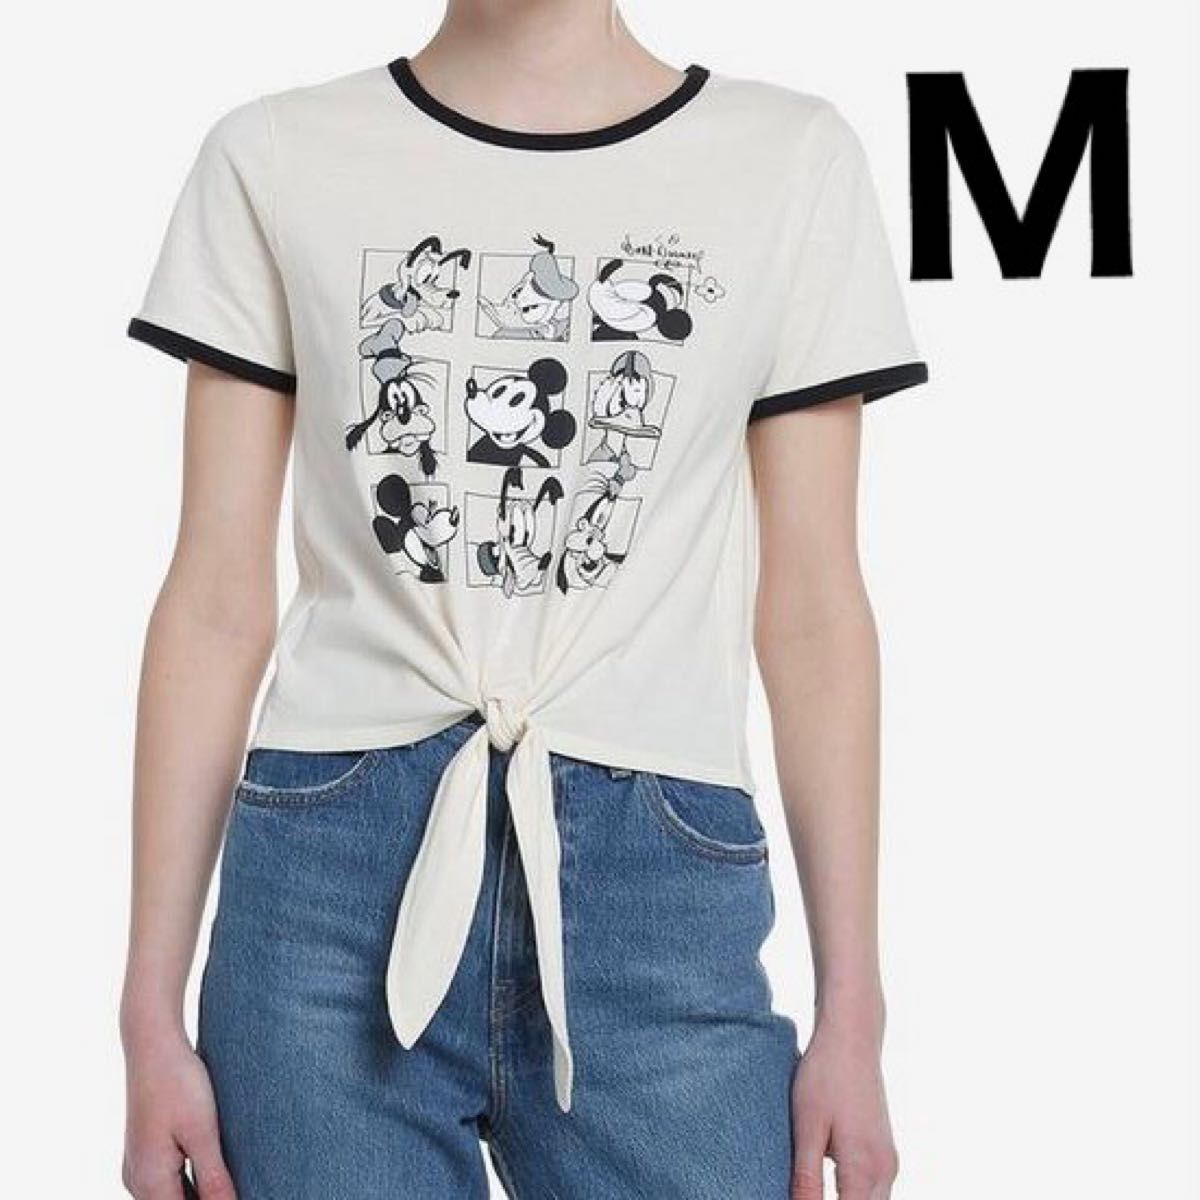 ディズニー 創立 100周年 ミッキー ミニー 半袖 Tシャツ M プルート ドナルド デイジー グーフィー